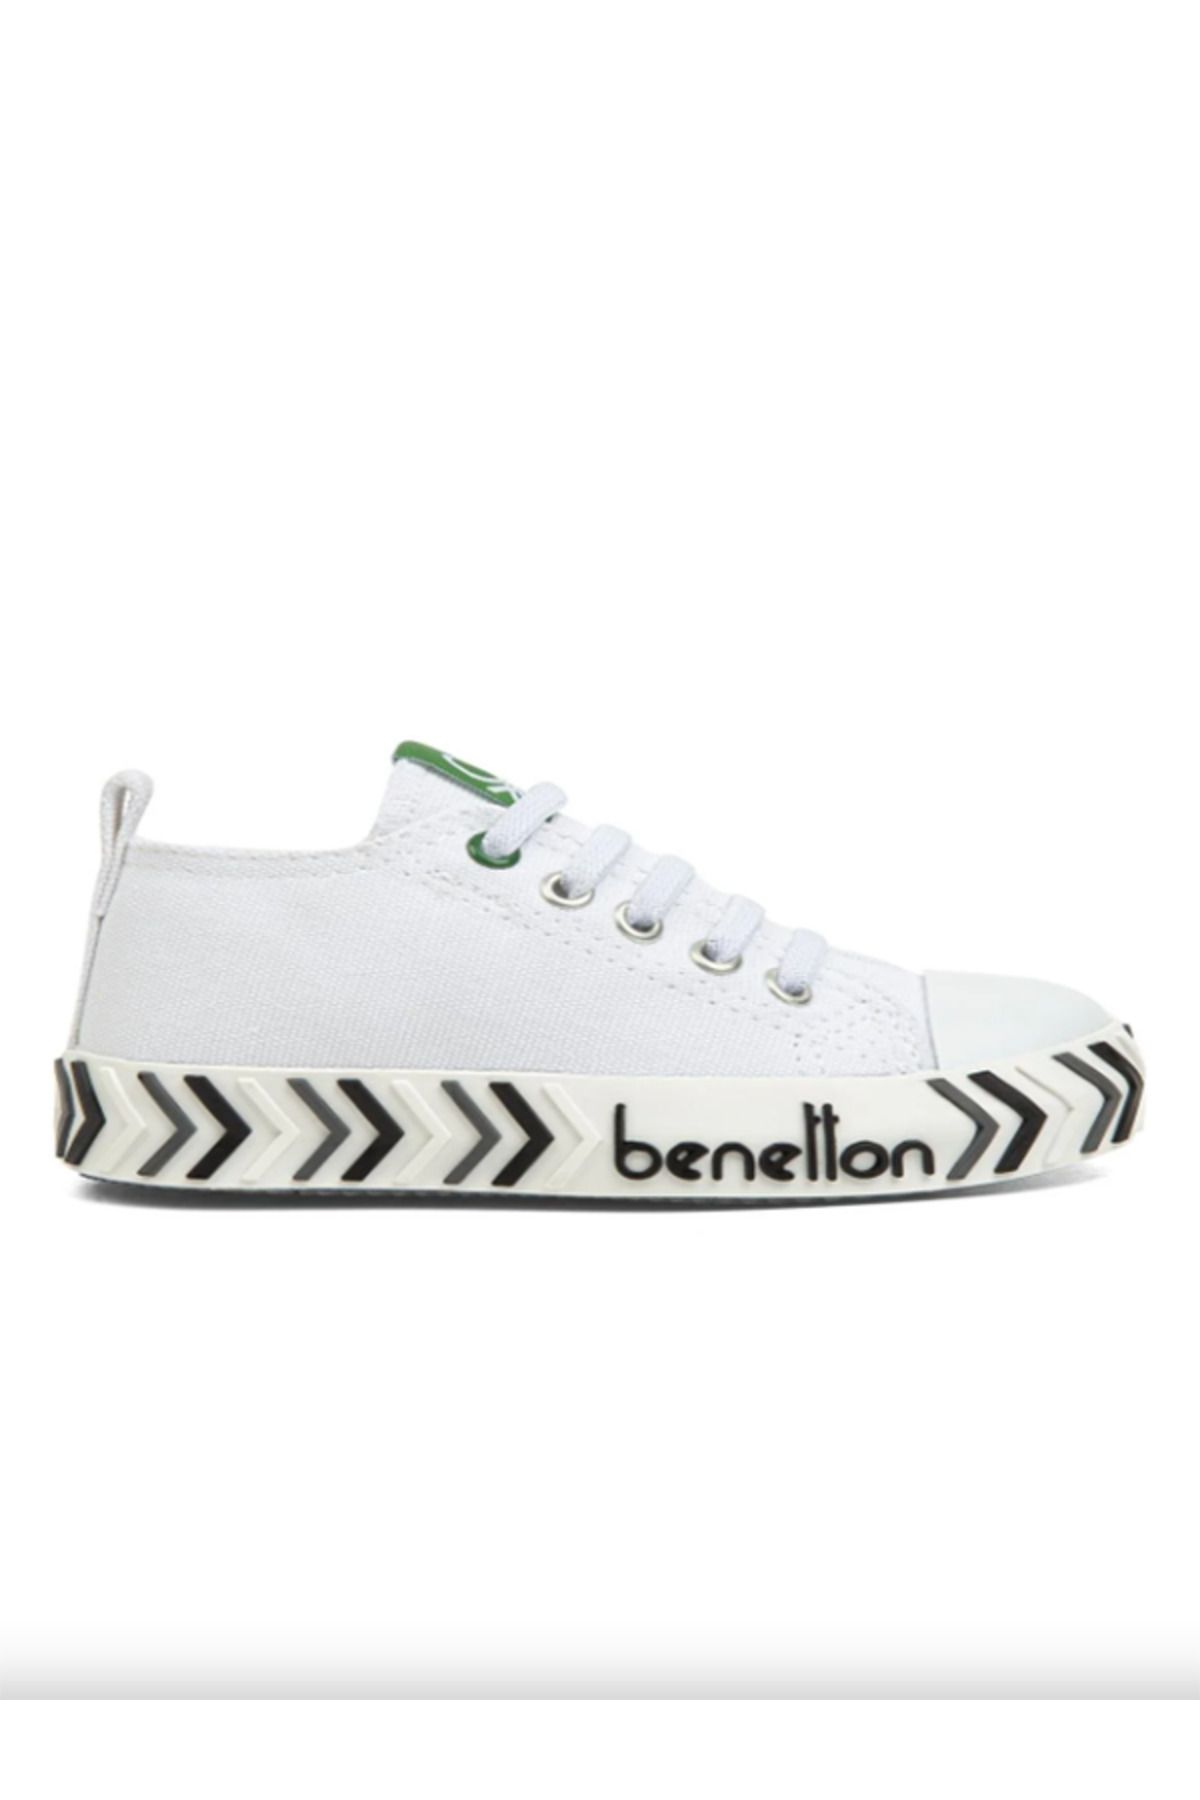 Benetton BN-30641 Çocuk Keten Spor Ayakkabı